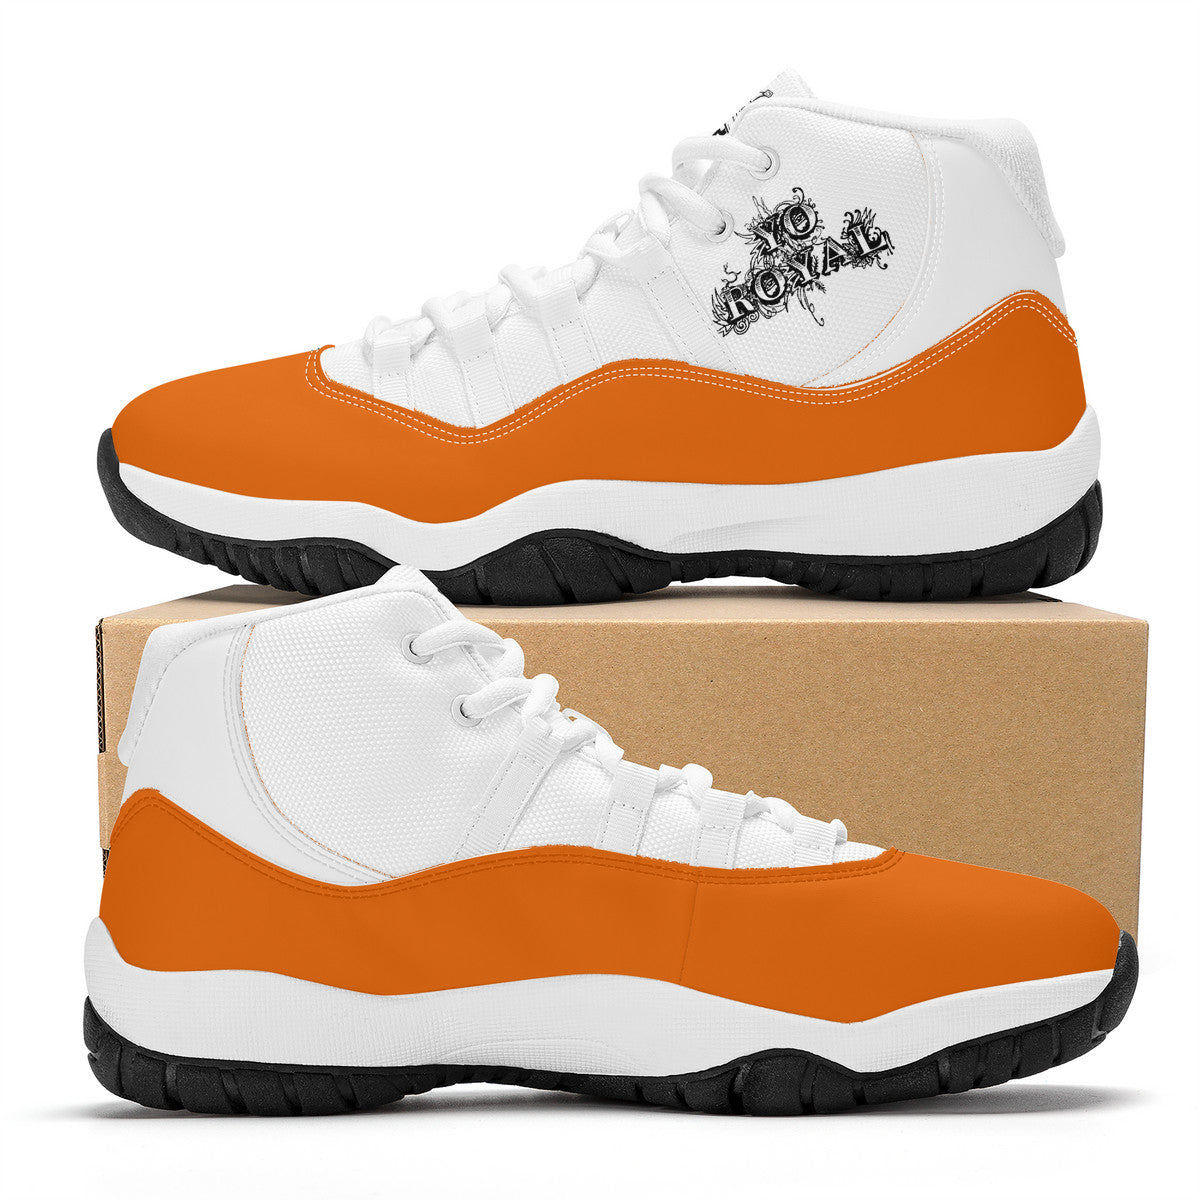 Orange High Top Air Retro Sneakers